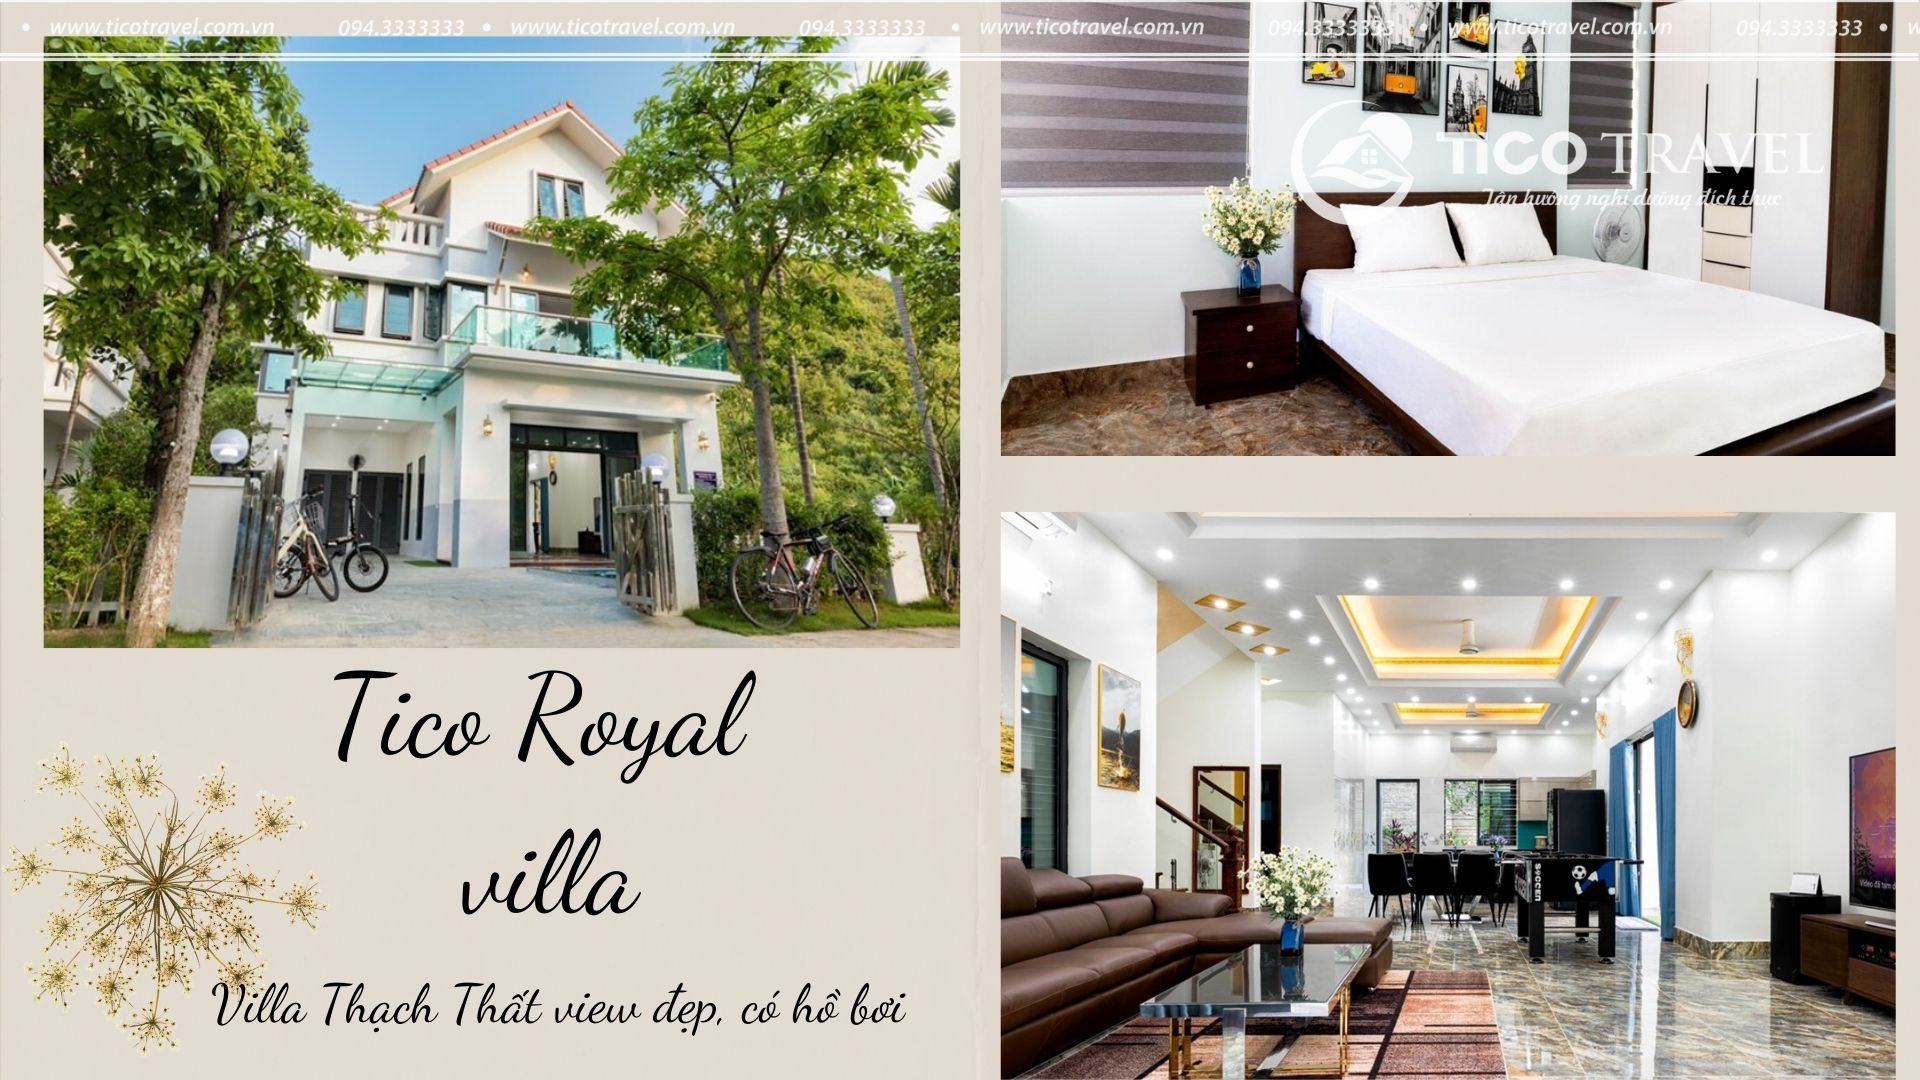 Tico Royal villa